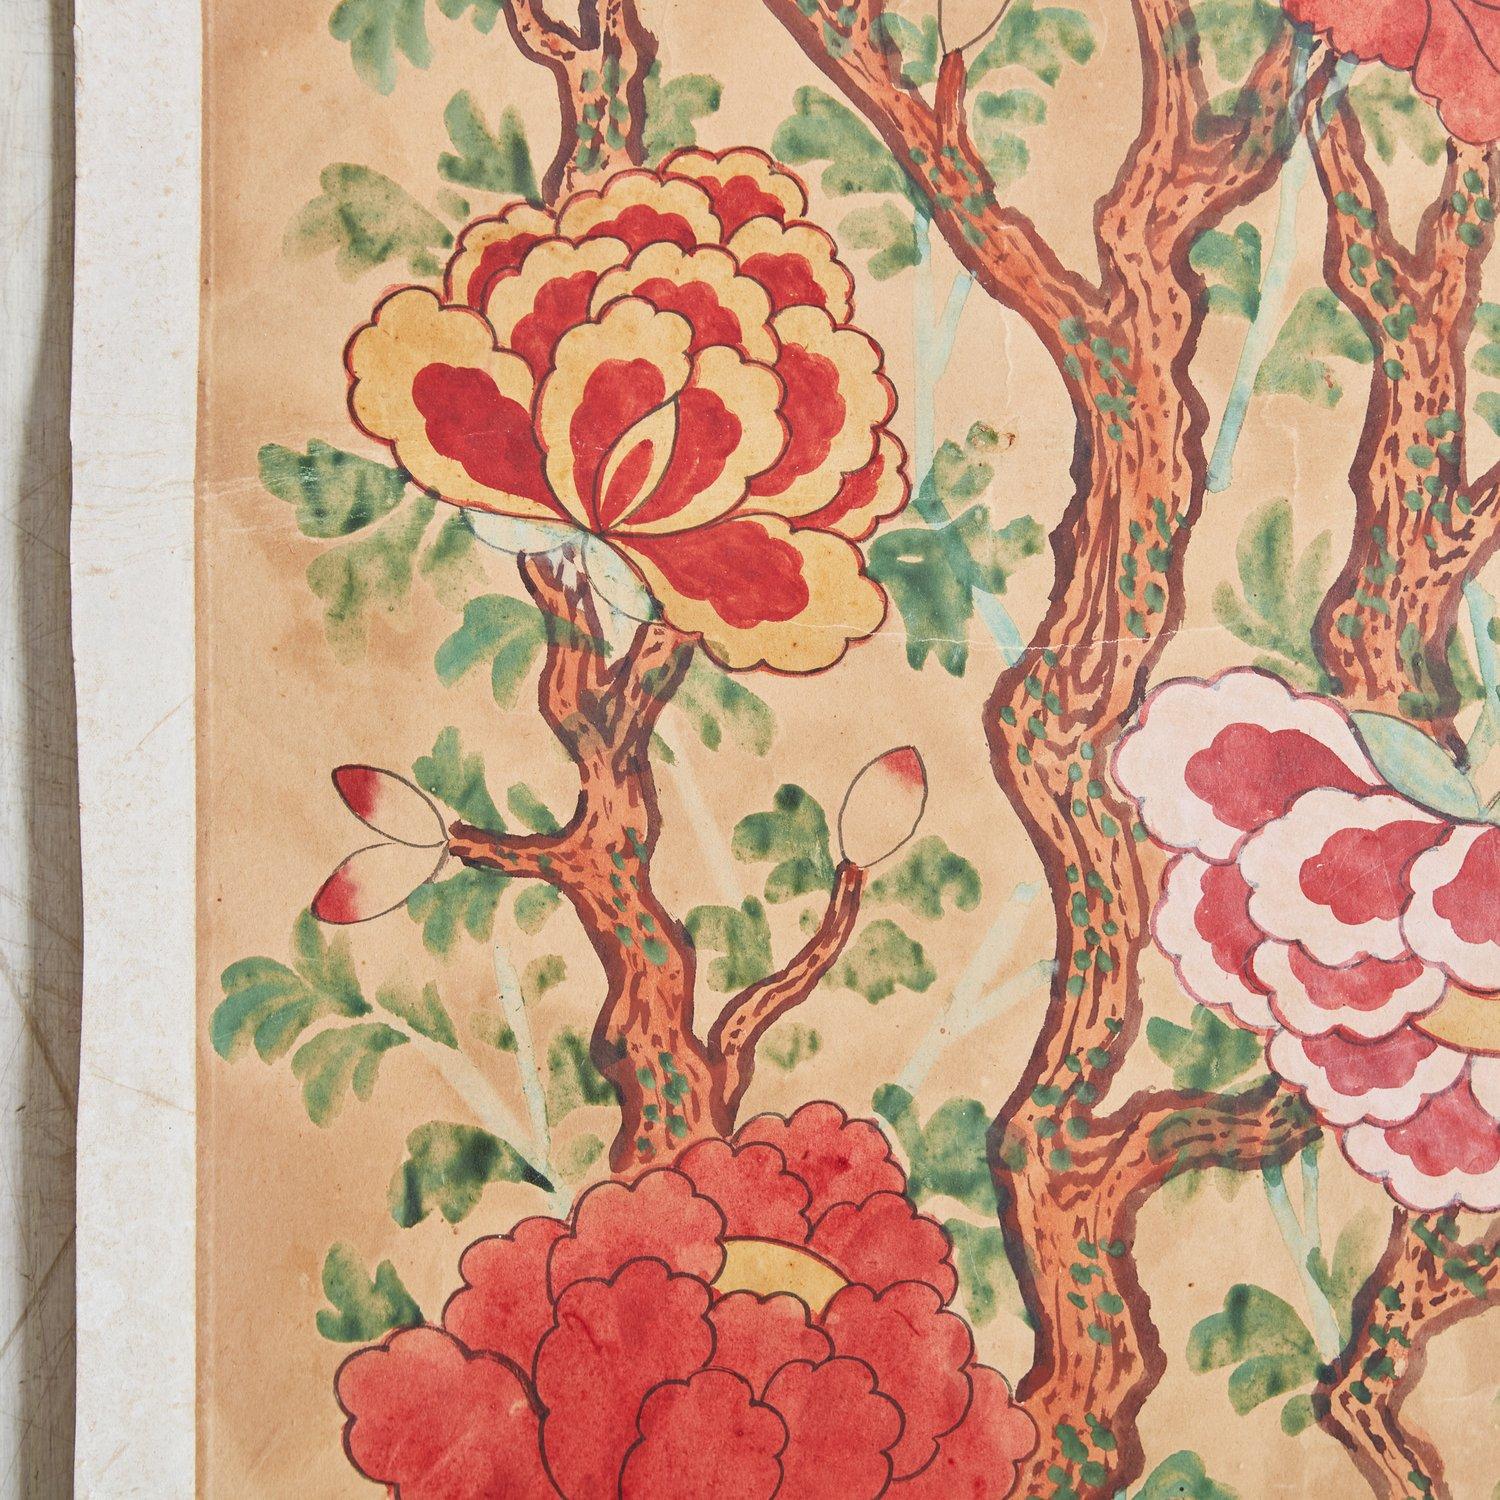 Vintage chinesische handgemalte Aquarell auf Papier mit lebendigen floralen Designs. Dieses Stück wurde von einem auf chinesische Kunst spezialisierten Sammler aus Korea und Taiwan erworben. 20. Jahrhundert. Einer verfügbar.